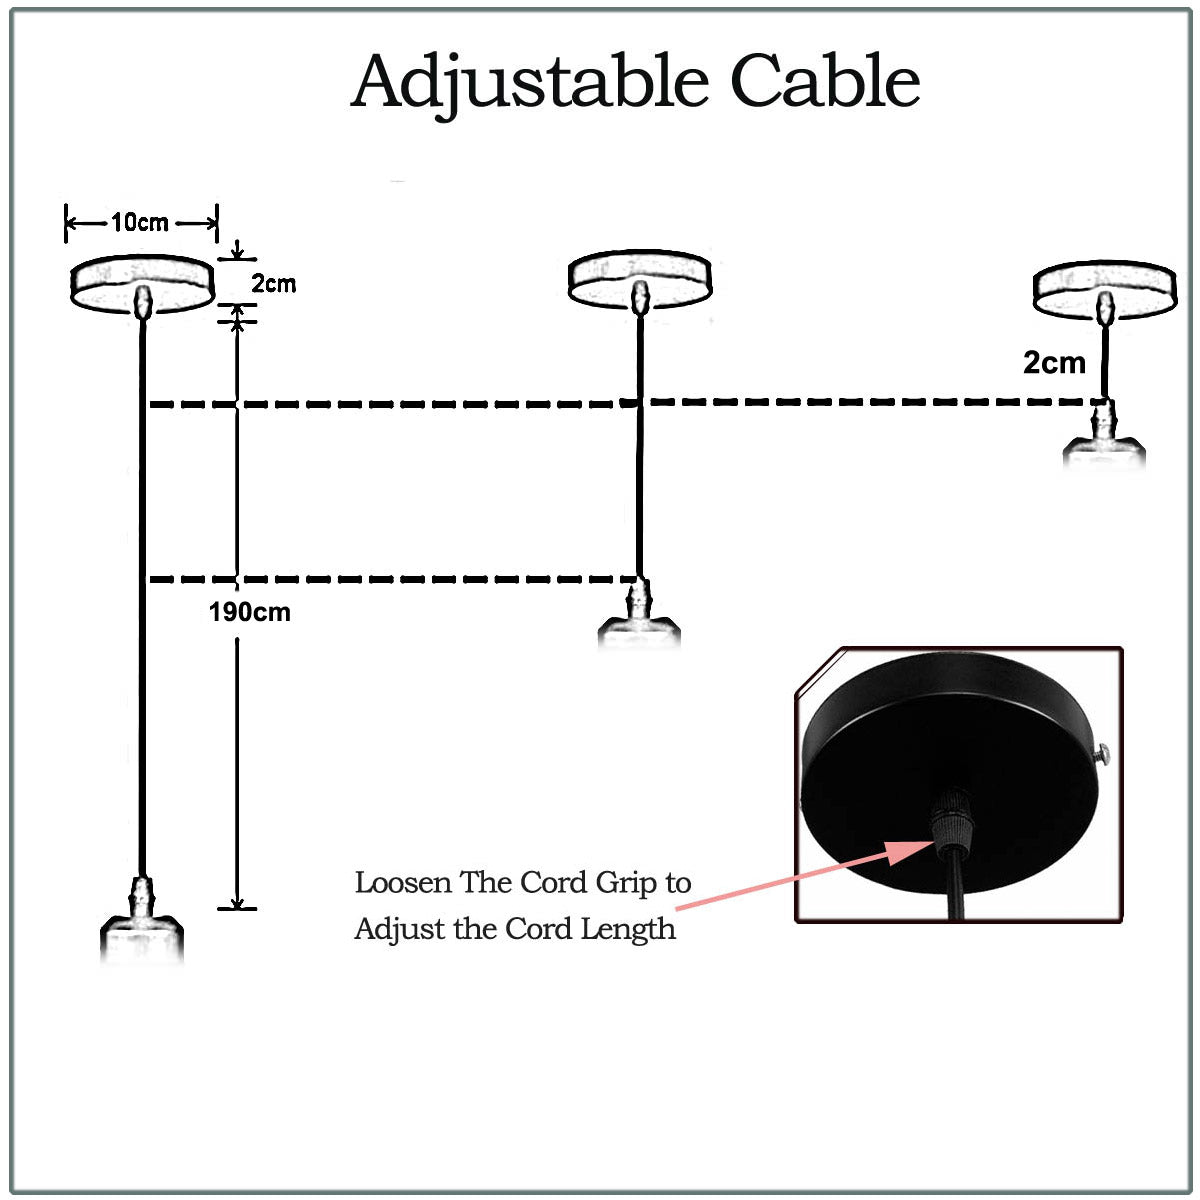 2m Black Round Cable E27 Base Shiny Black Pendant Holder~1725 - electricalsone UK Ltd